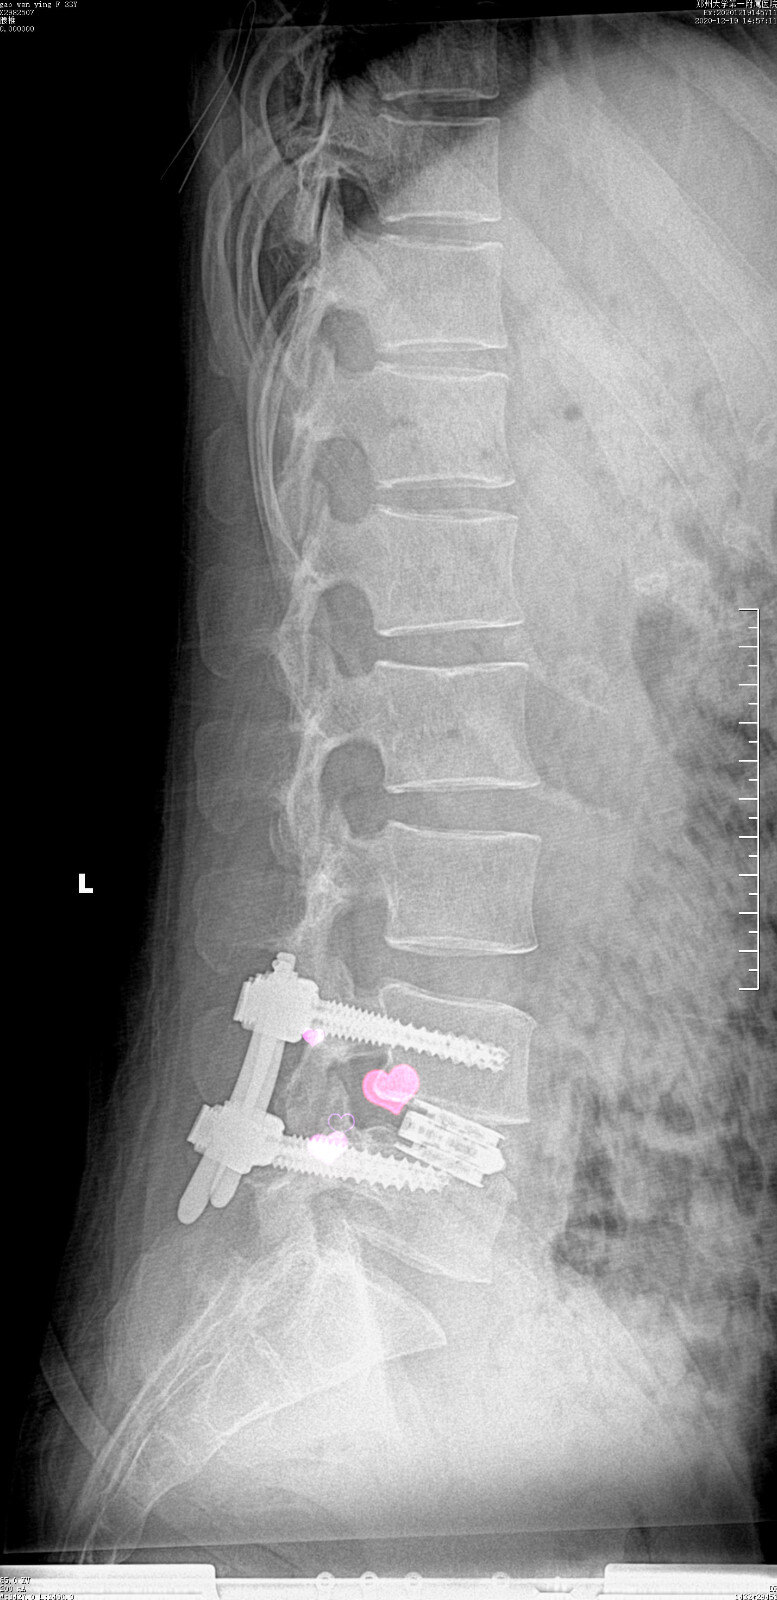 术后腰椎侧位片:l5椎弓根螺钉稍短,位置好.融合器位置佳.